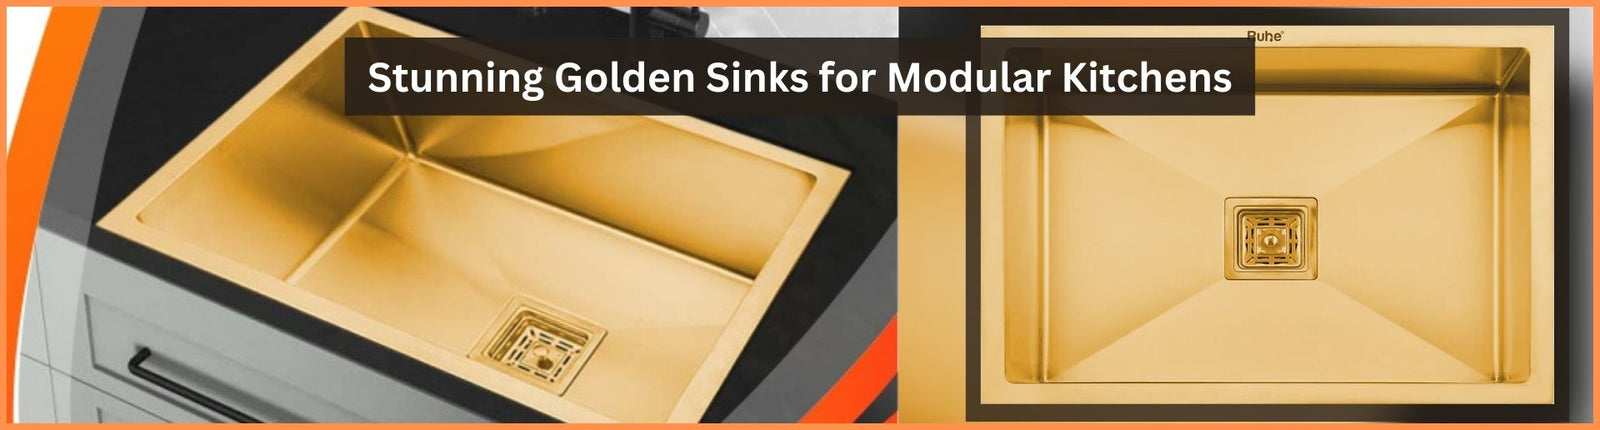 Stunning Golden Sinks for Modular Kitchens: It's Trending!